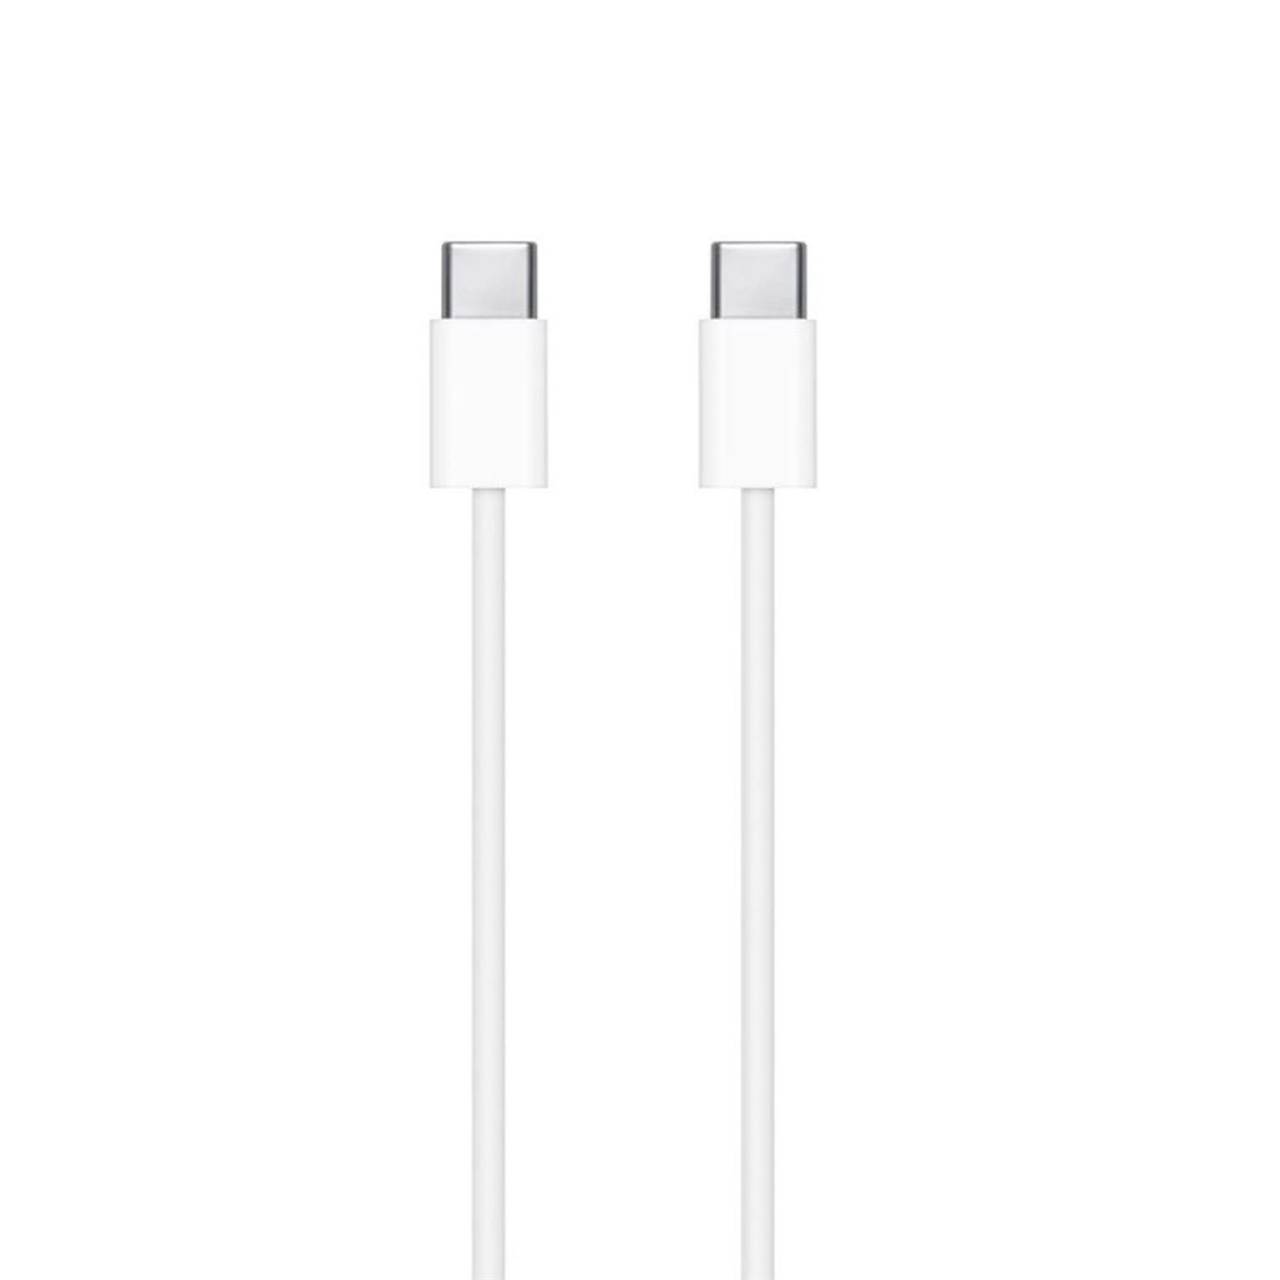 Apple Ladekabel – USB-C auf USB-C für Smartphones und andere Geräte, Schnelle Datenübertragung, Länge 1,0 m